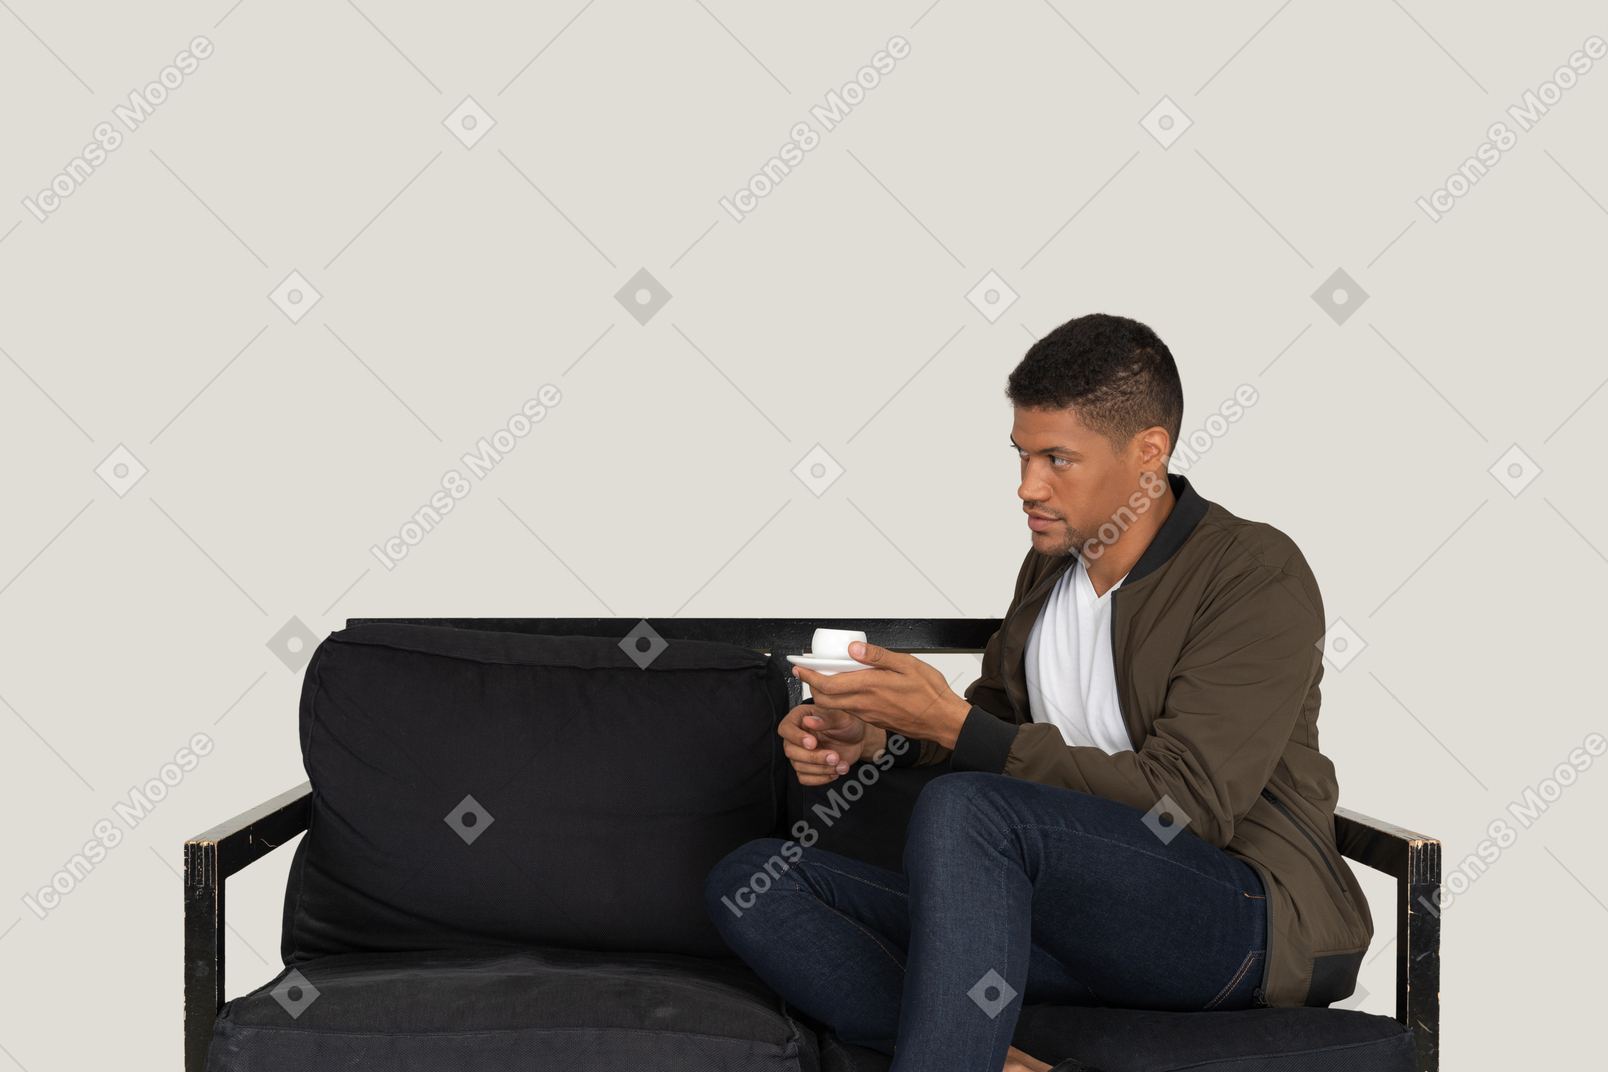 一杯のコーヒーとソファに座っている若い夢の男の4分の3のビュー